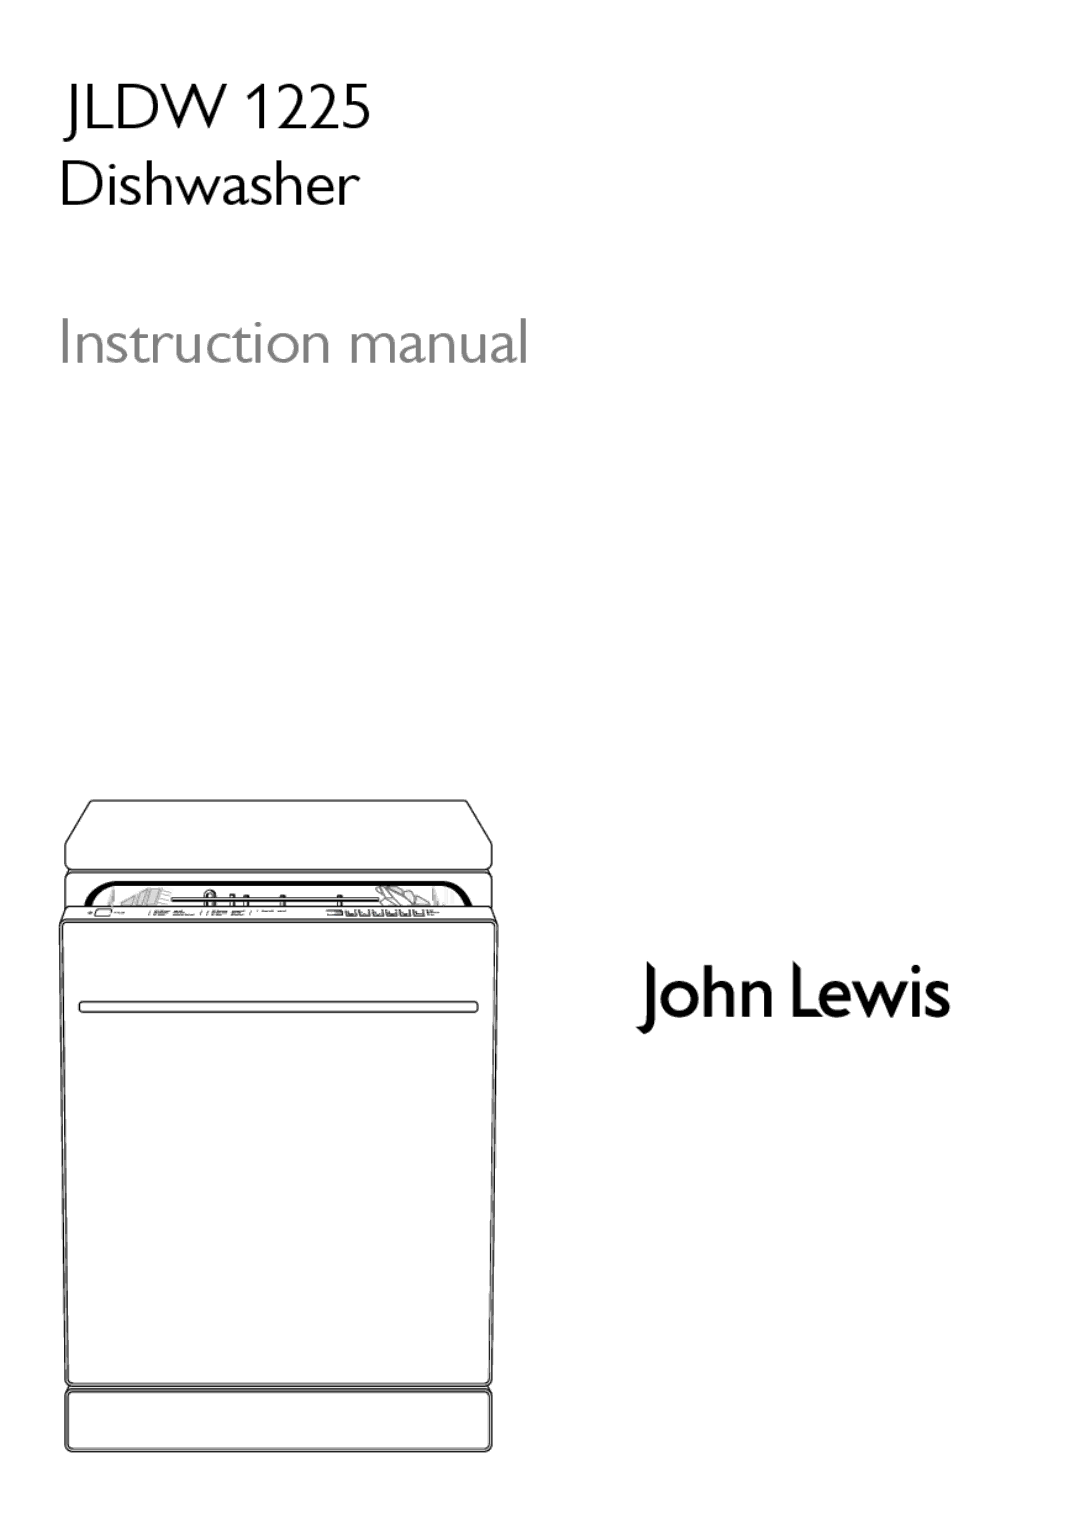 John Lewis JLDW 1225 instruction manual Jldw Dishwasher 